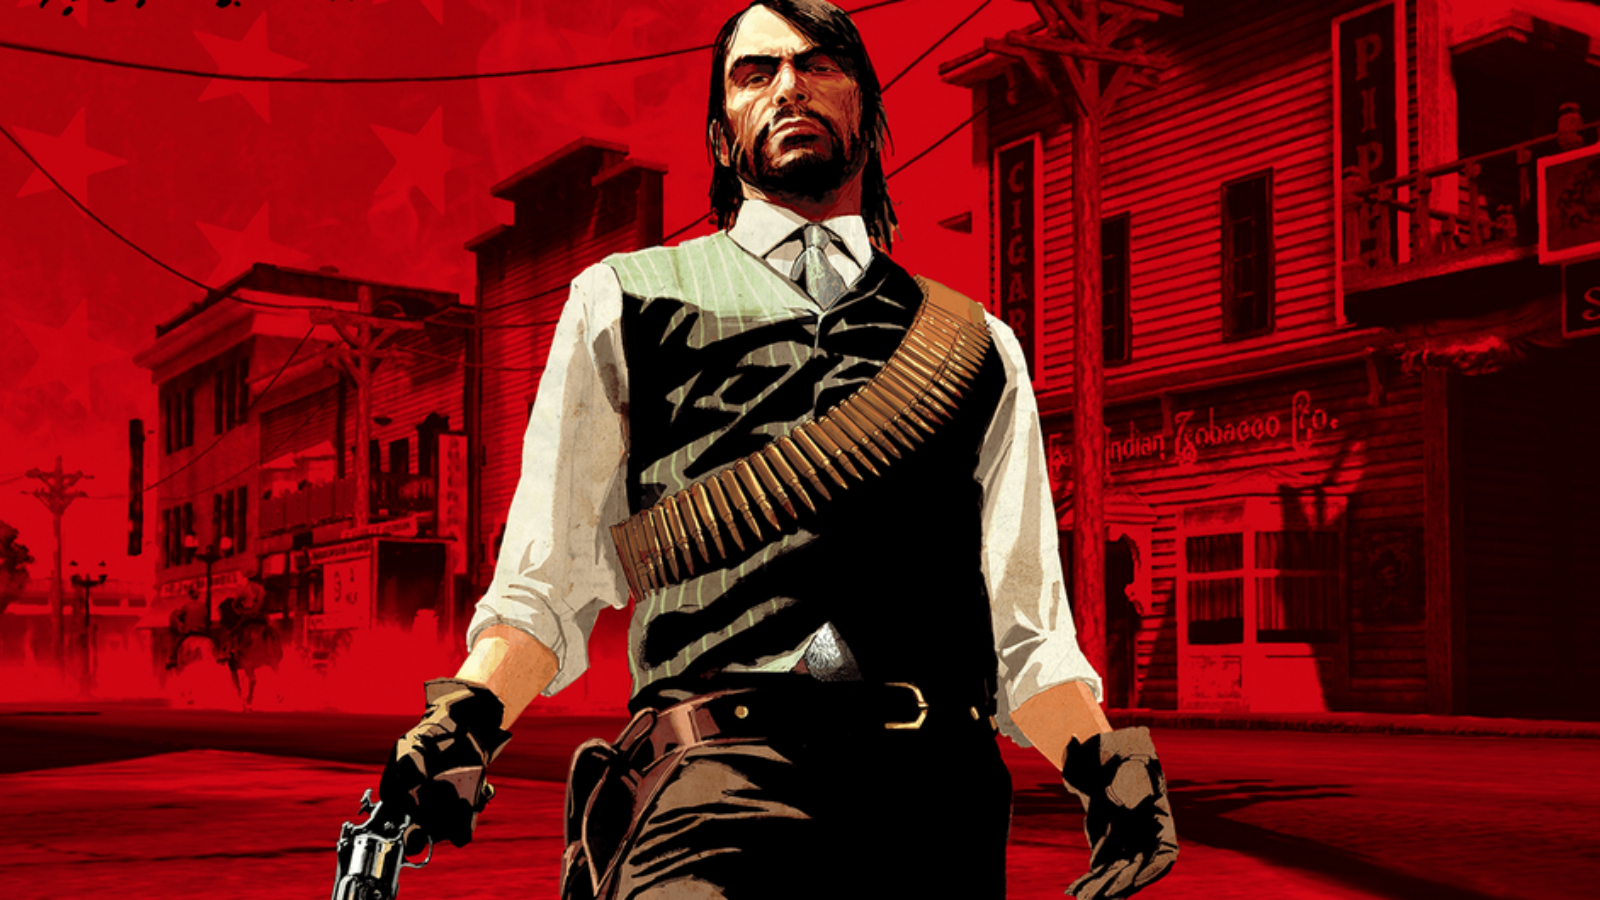 Red Dead Redemption 2 voice actor debunks CoD Vanguard role rumors - Dexerto